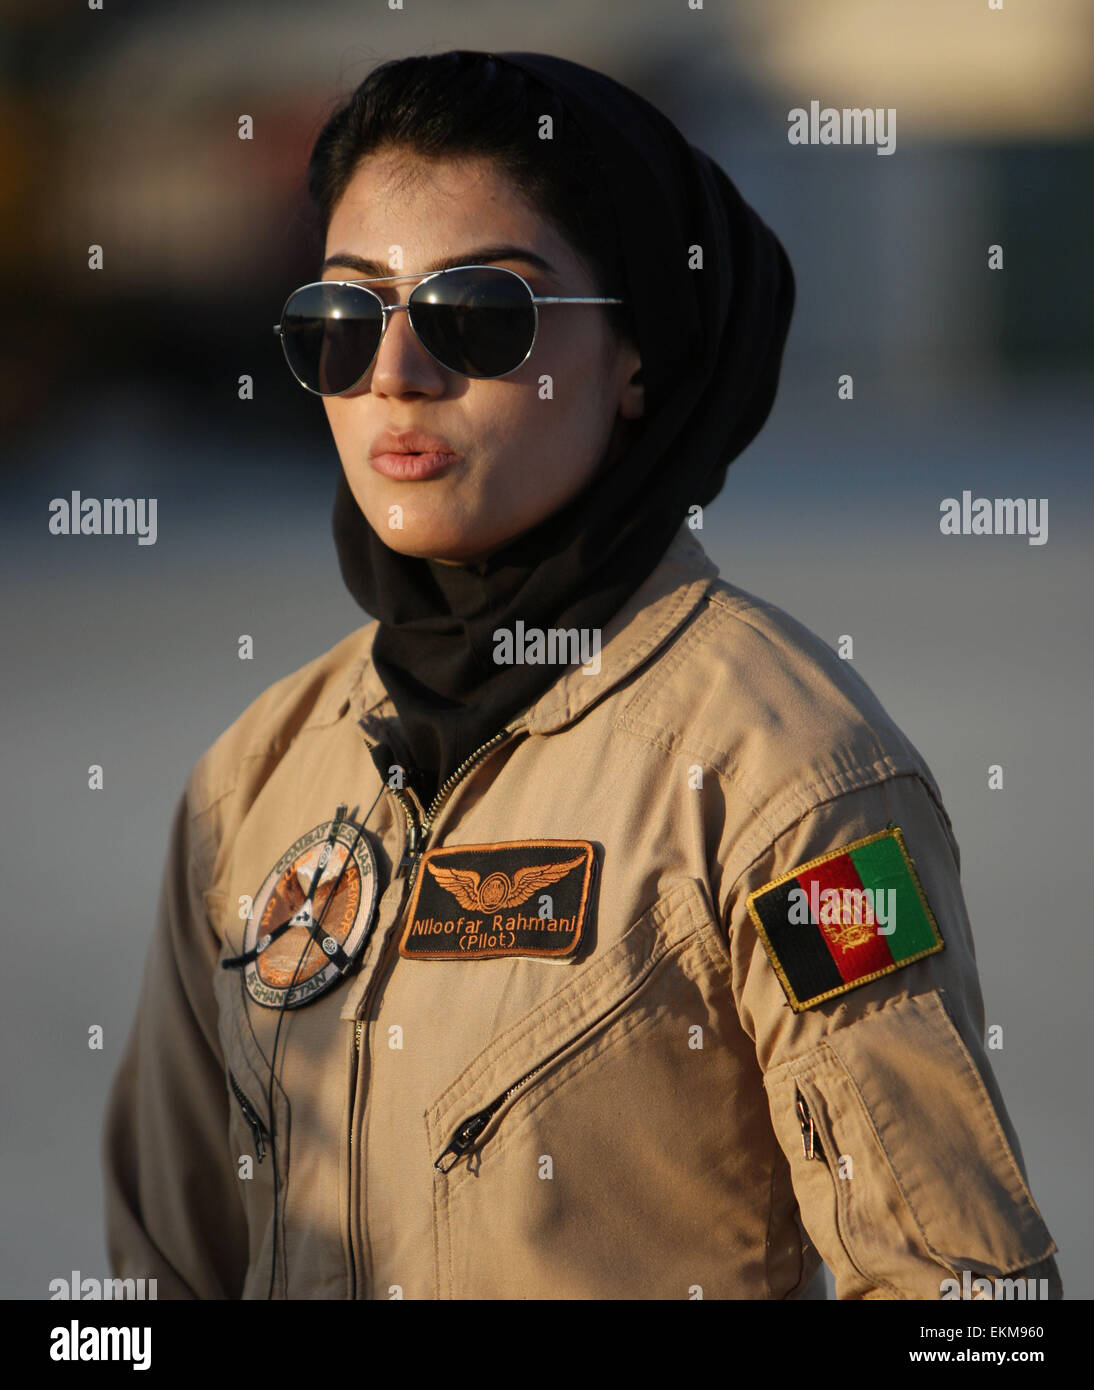 Kabul, Afganistán. 12 abr, 2015. Niloofar Rahmani es visto en el aeropuerto militar de Kabul, Afganistán, 12 de abril de 2015. Rahmani, nacido en 1992, es la primera mujer afgana de ala fija aviador de la Fuerza Aérea. Crédito: Ahmad Massoud/Xinhua/Alamy Live News Foto de stock